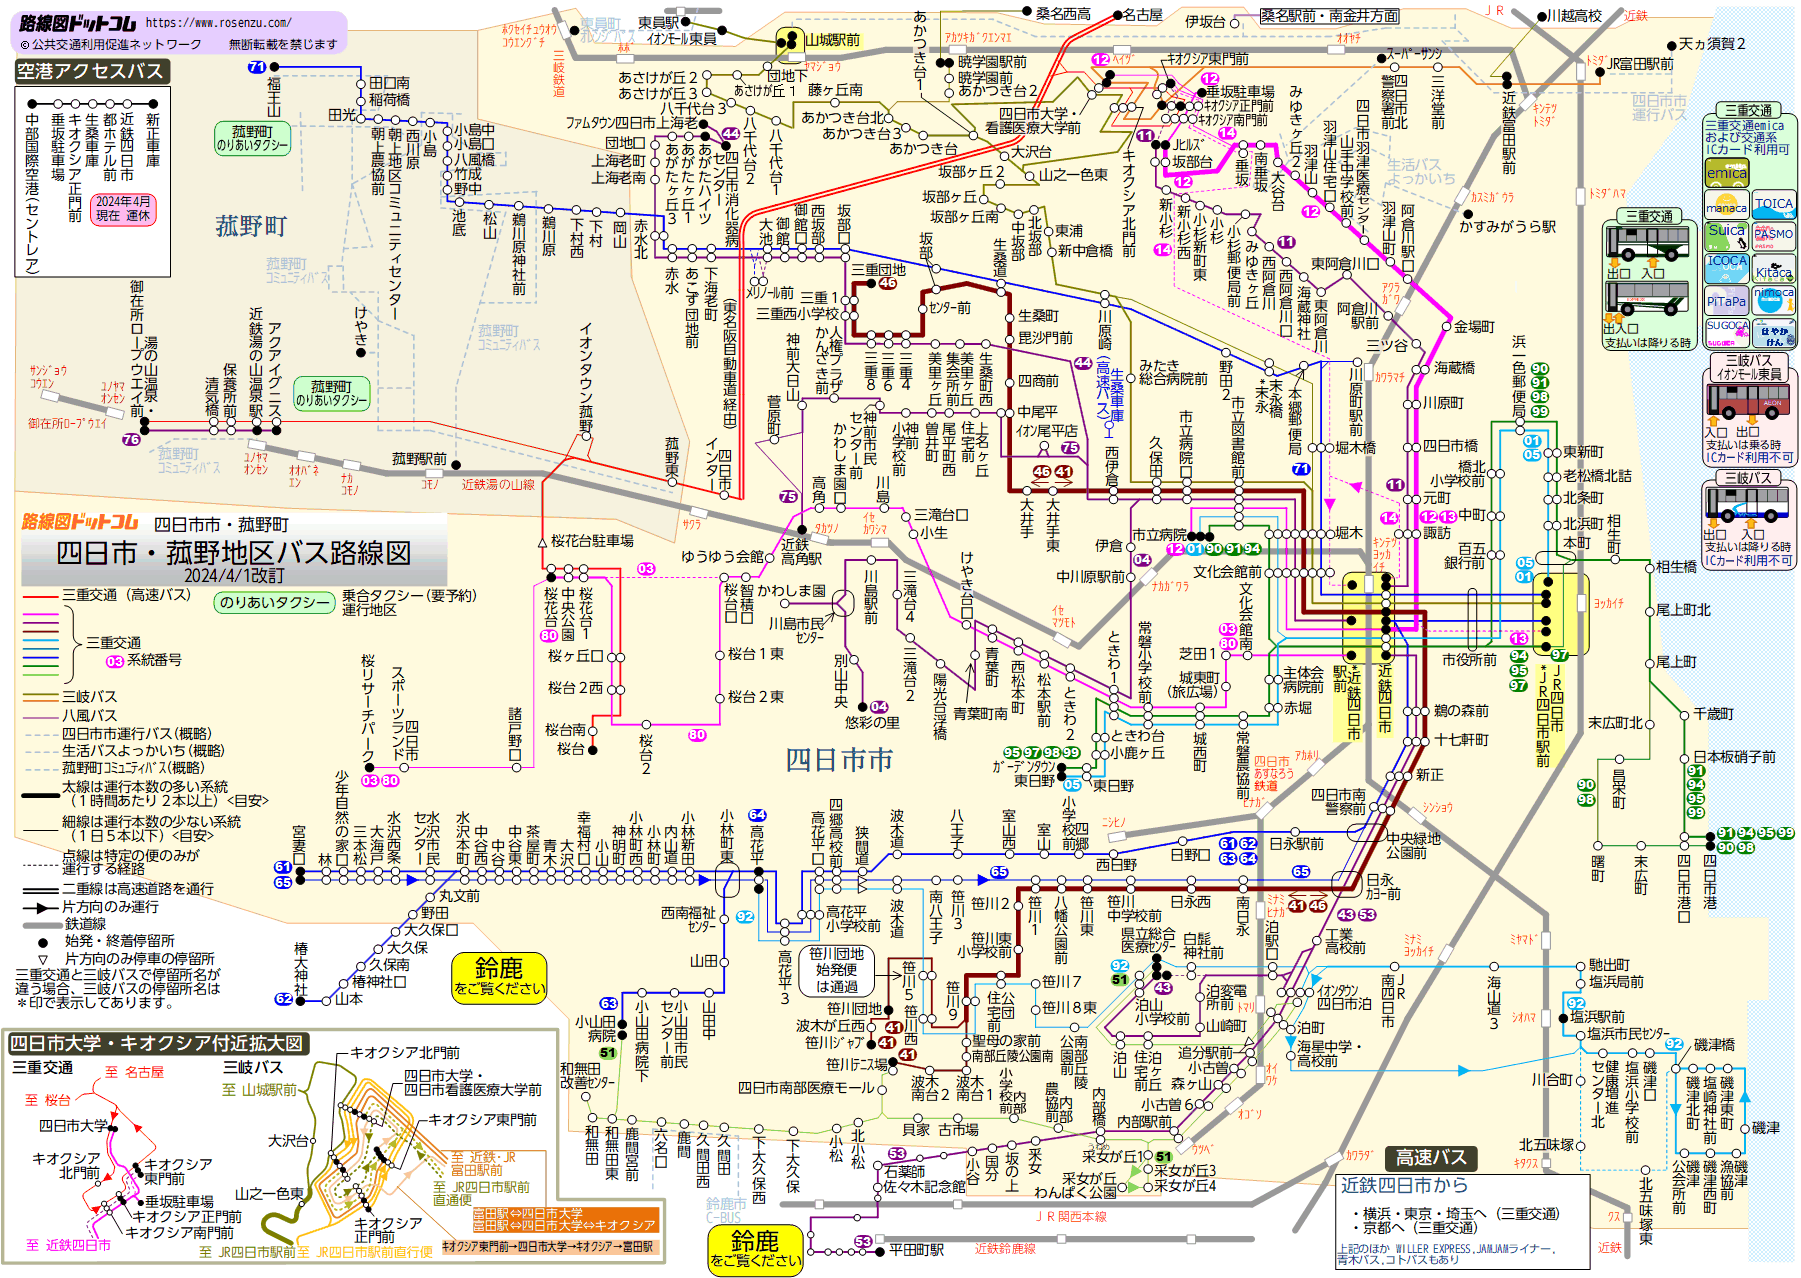 路線図ドットコム／三重県／四日市・菰野地区バス路線図